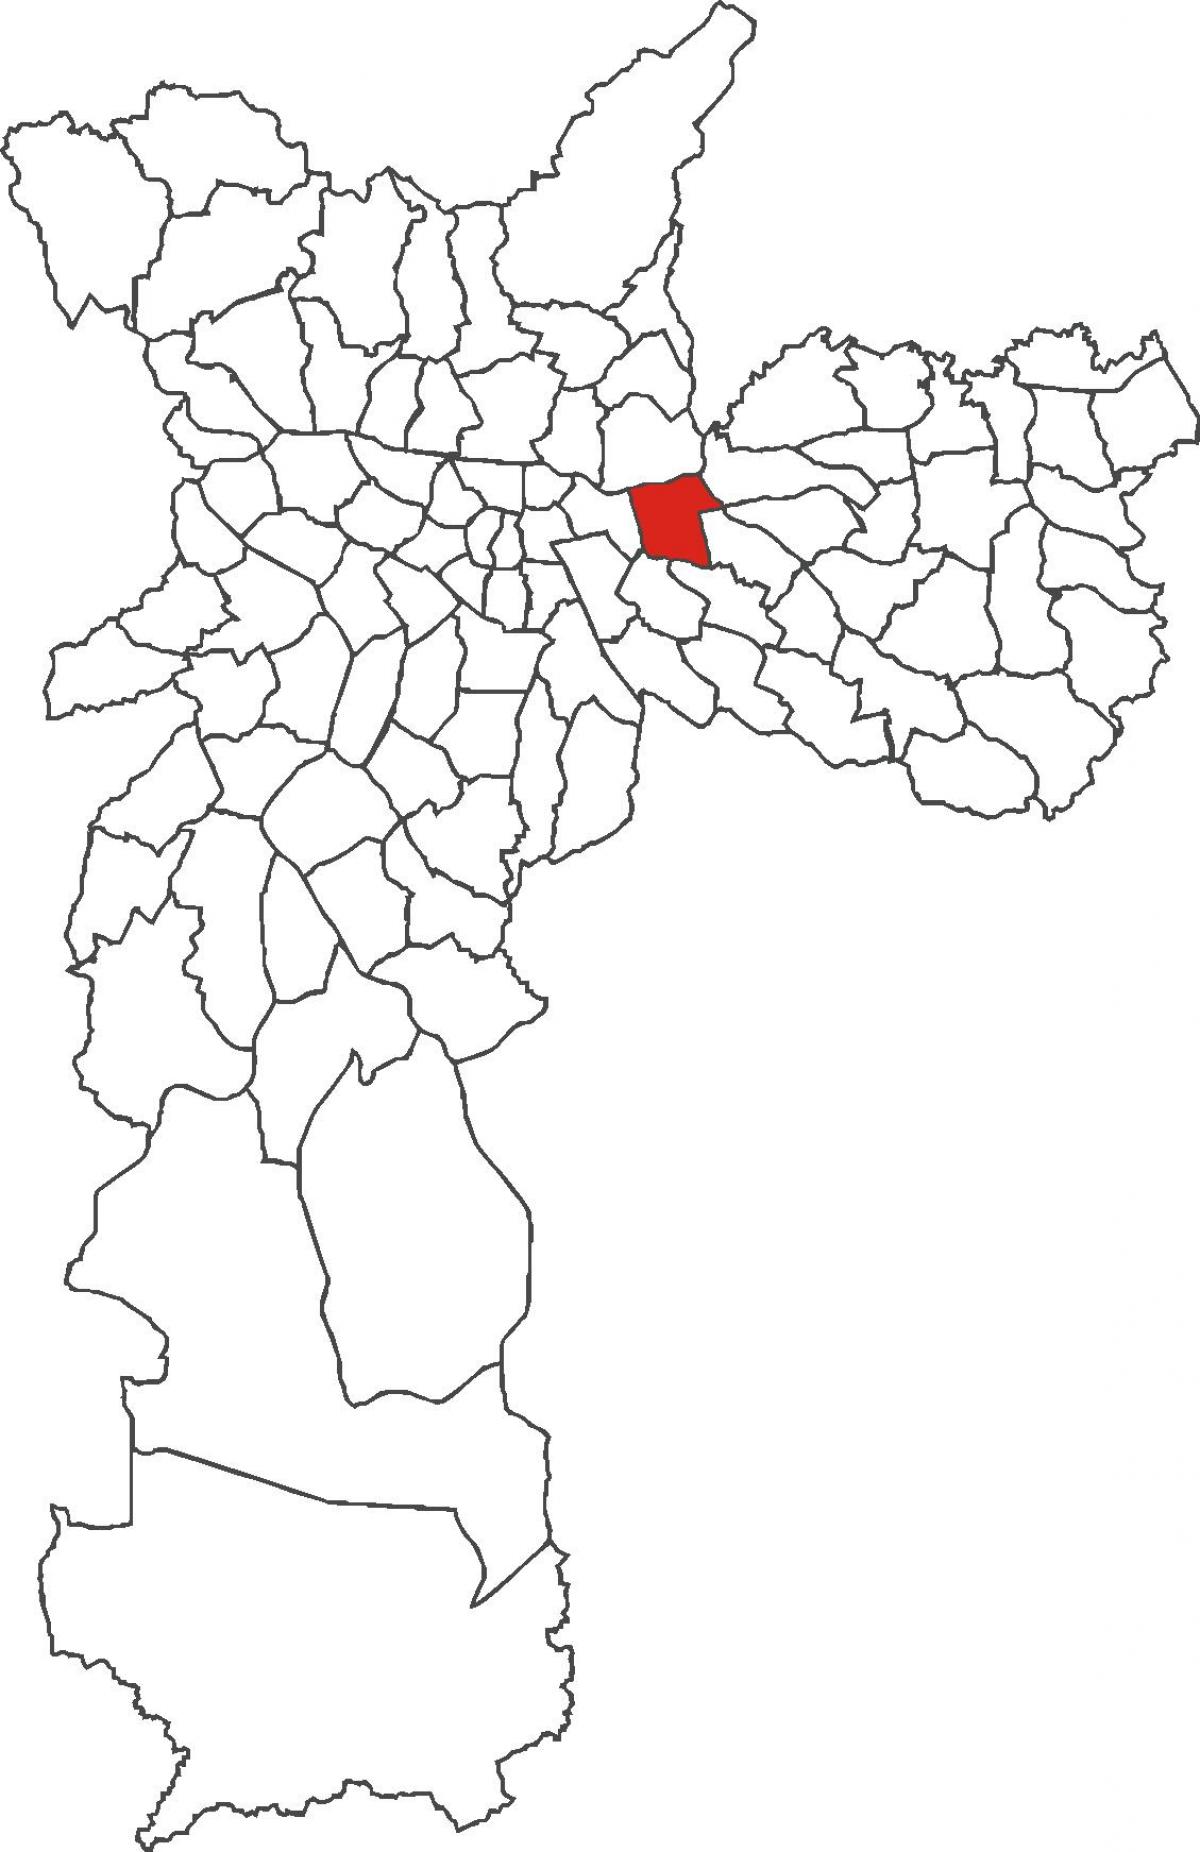 નકશો Tatuapé જિલ્લા